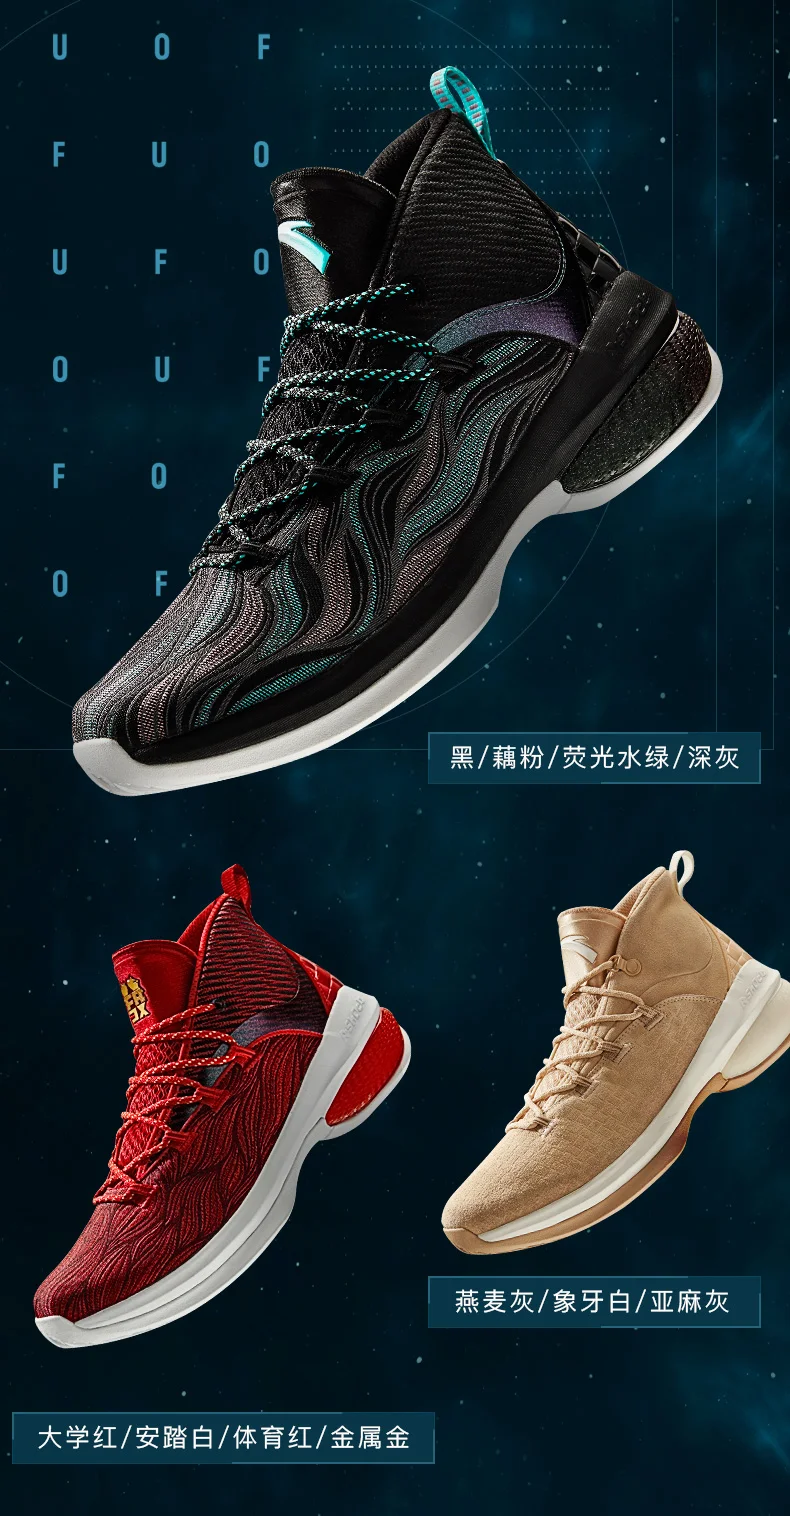 Баскетбольная обувь мужская обувь спортивная обувь 2019 лето новые высокие, чтобы помочь UFO2 поколения-небесное тело сапоги 11911603